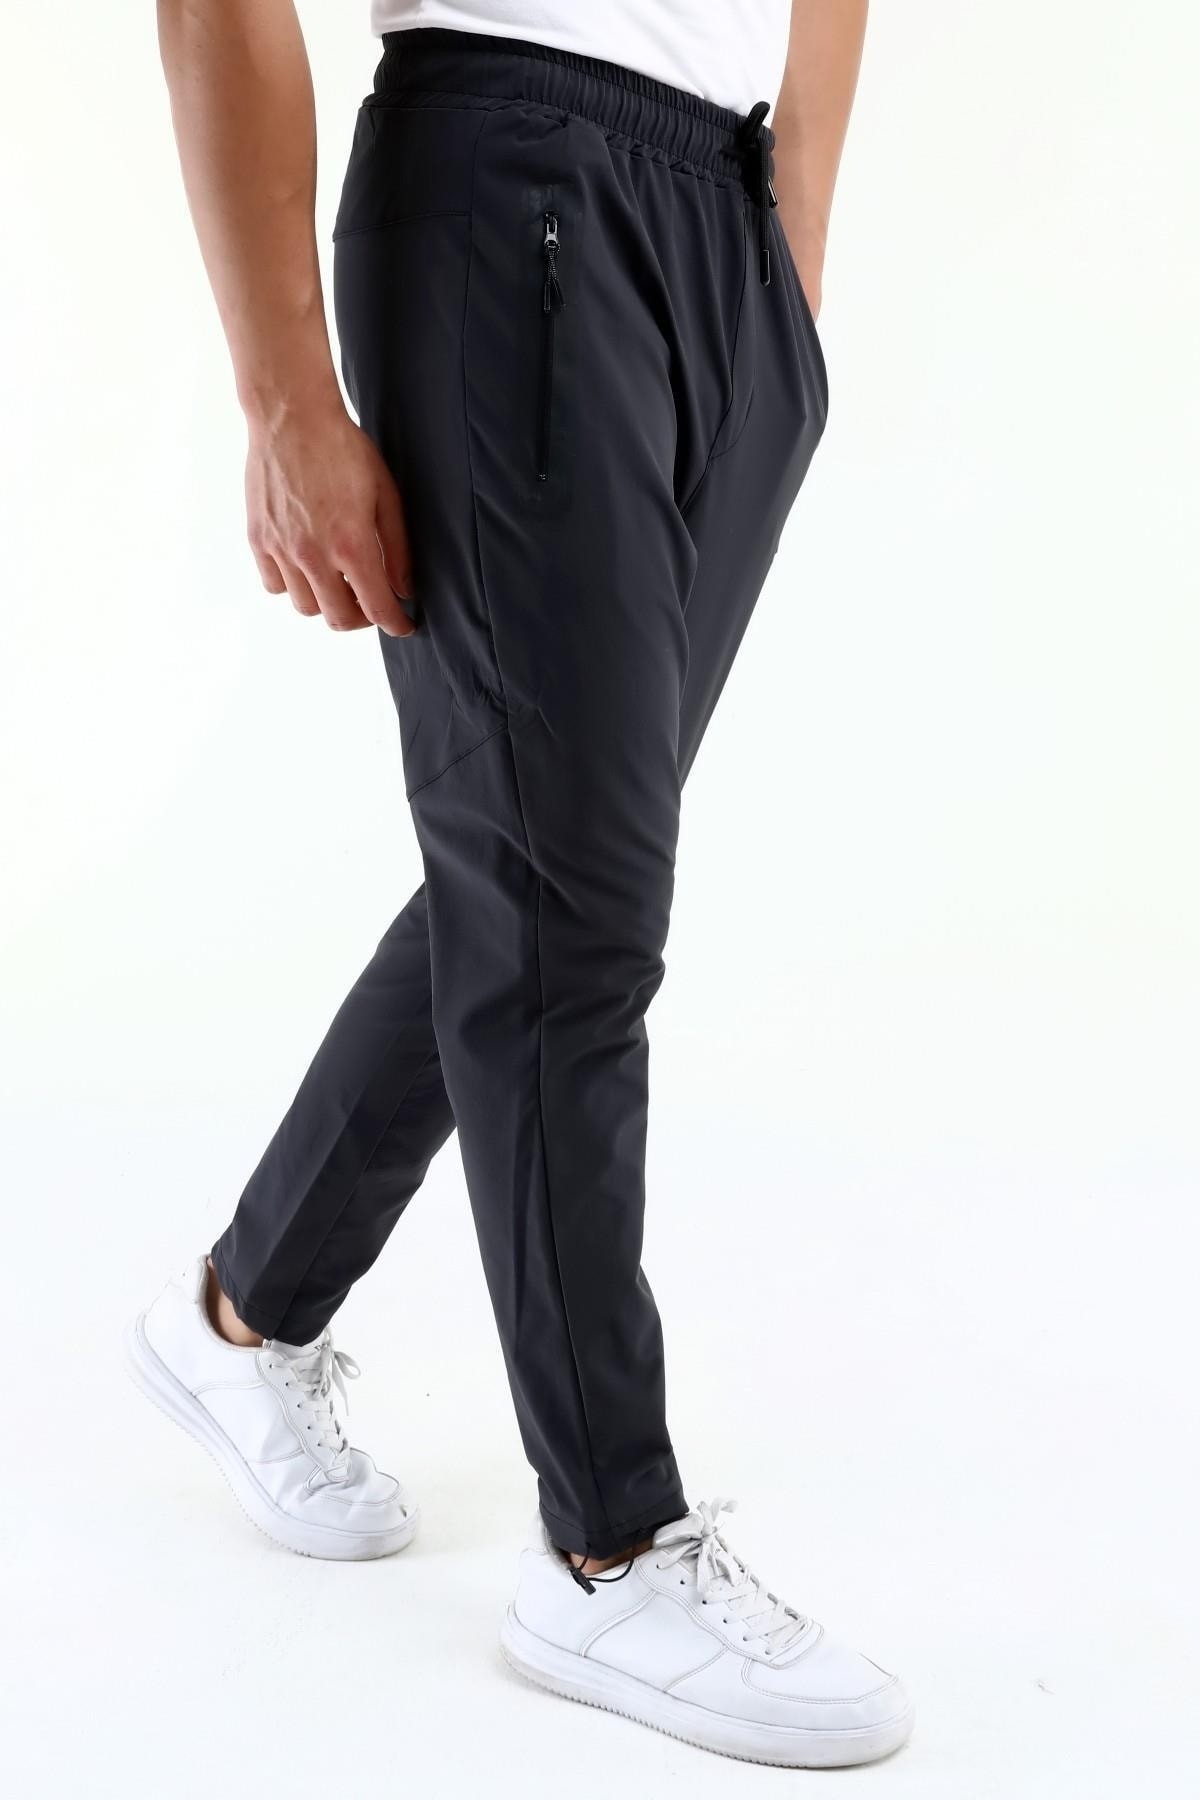 Ghassy Co. Erkek Koşu Yürüyüş Atletik Egzersiz Hızlı Kuruma Fermuar Cepli Joggers Pantolon - FÜME(KOYU GRİ)